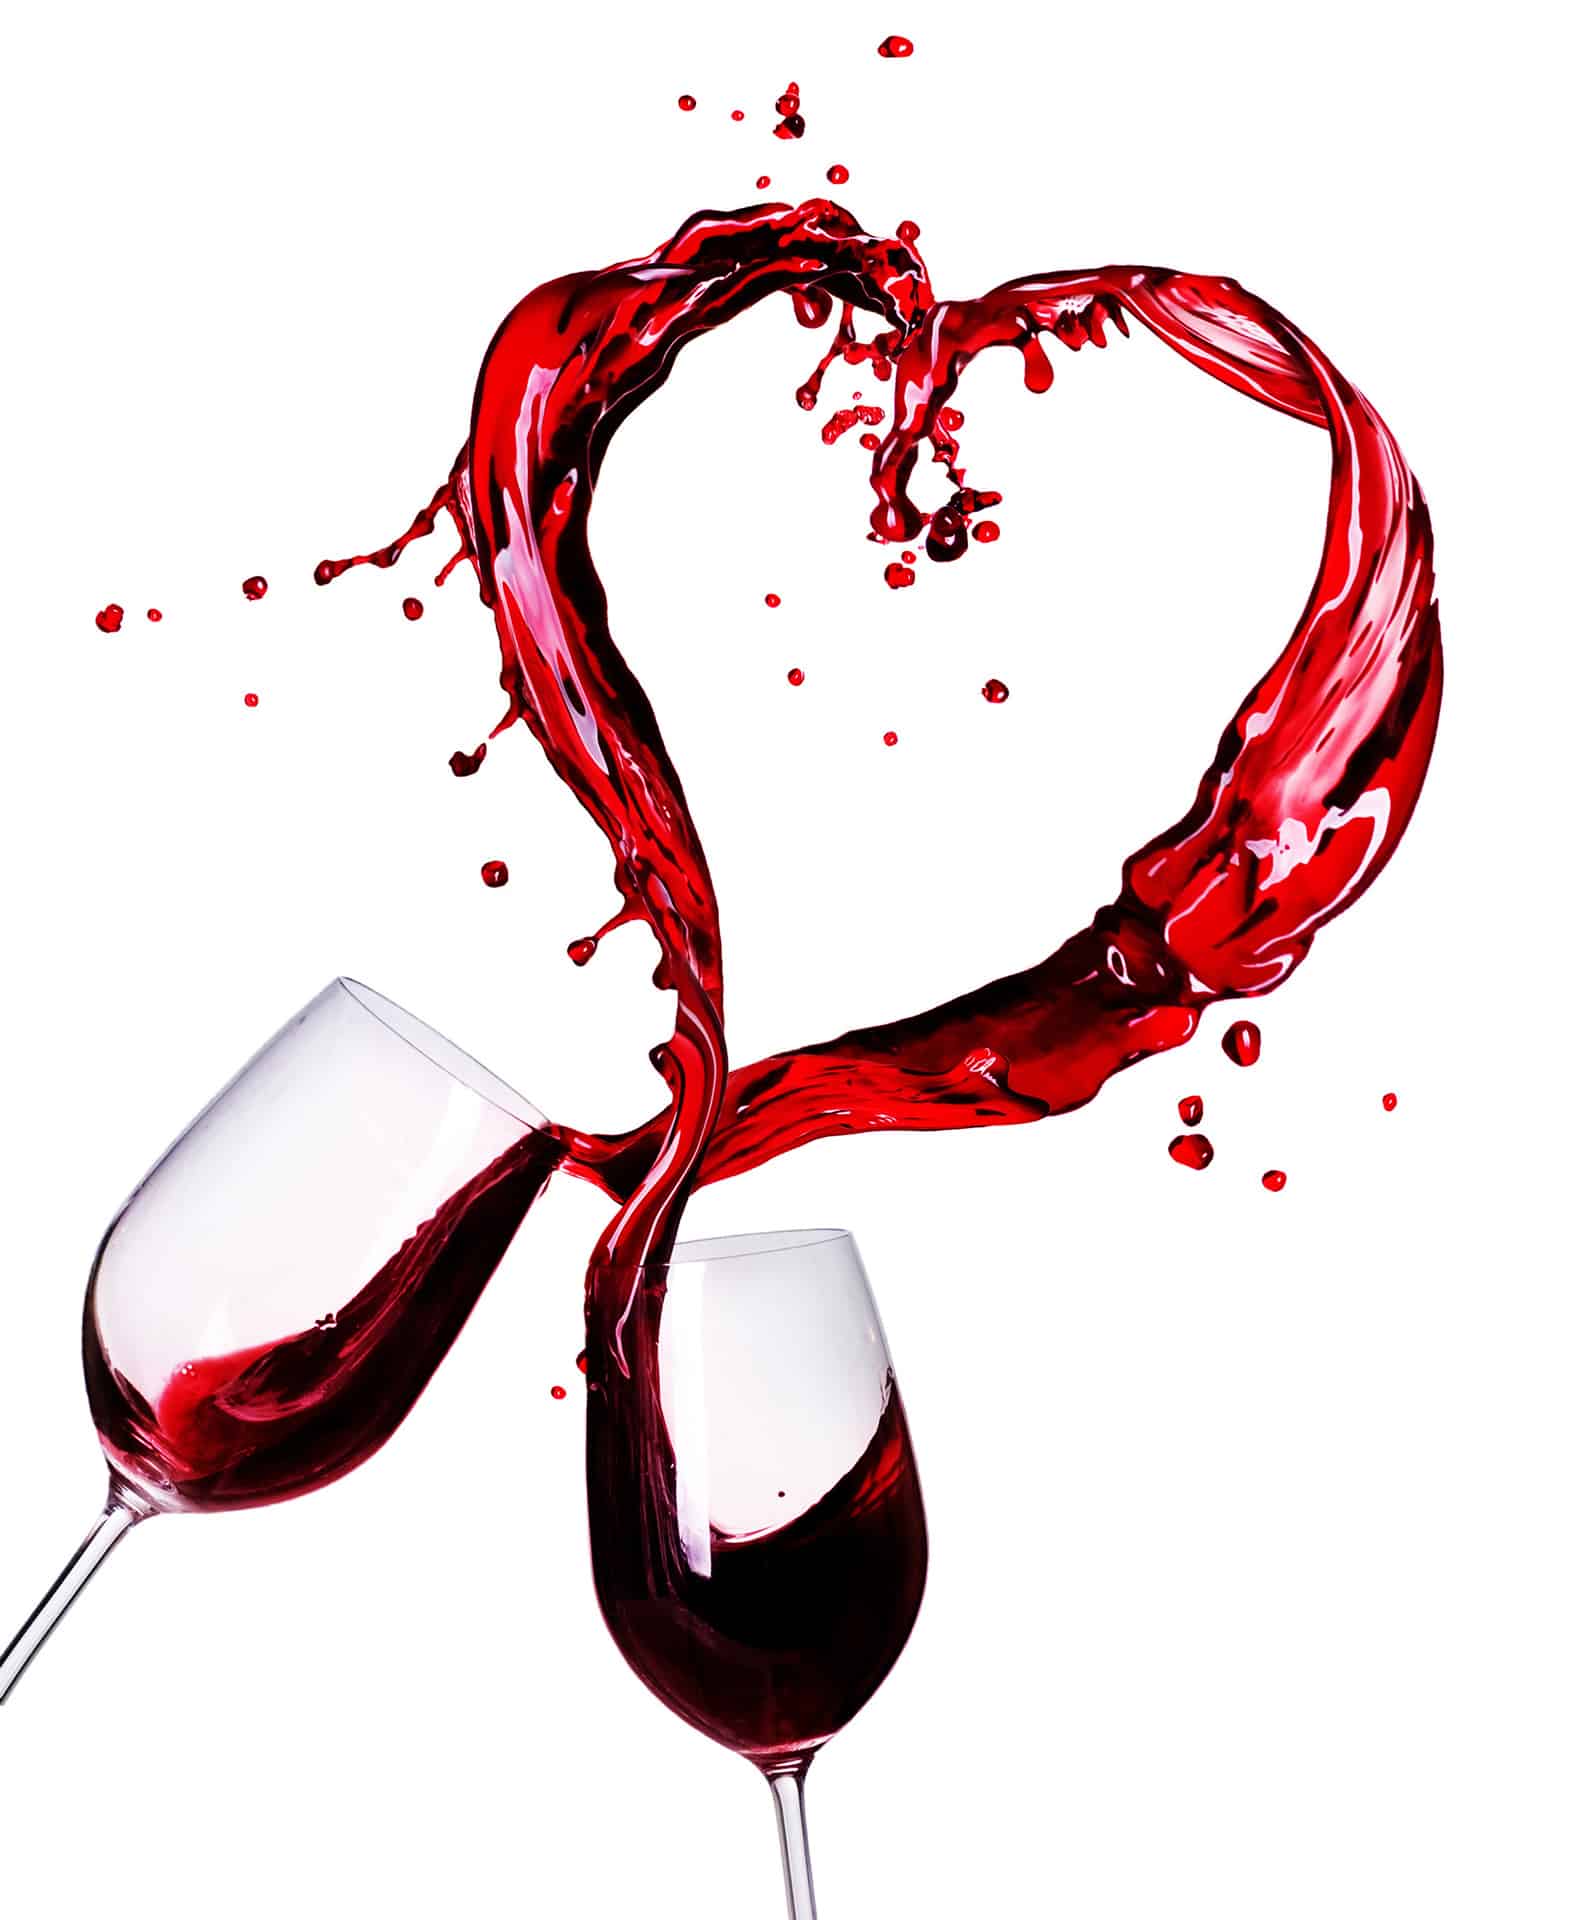 Les meilleures appellations de vins sont sur appellationvin.fr